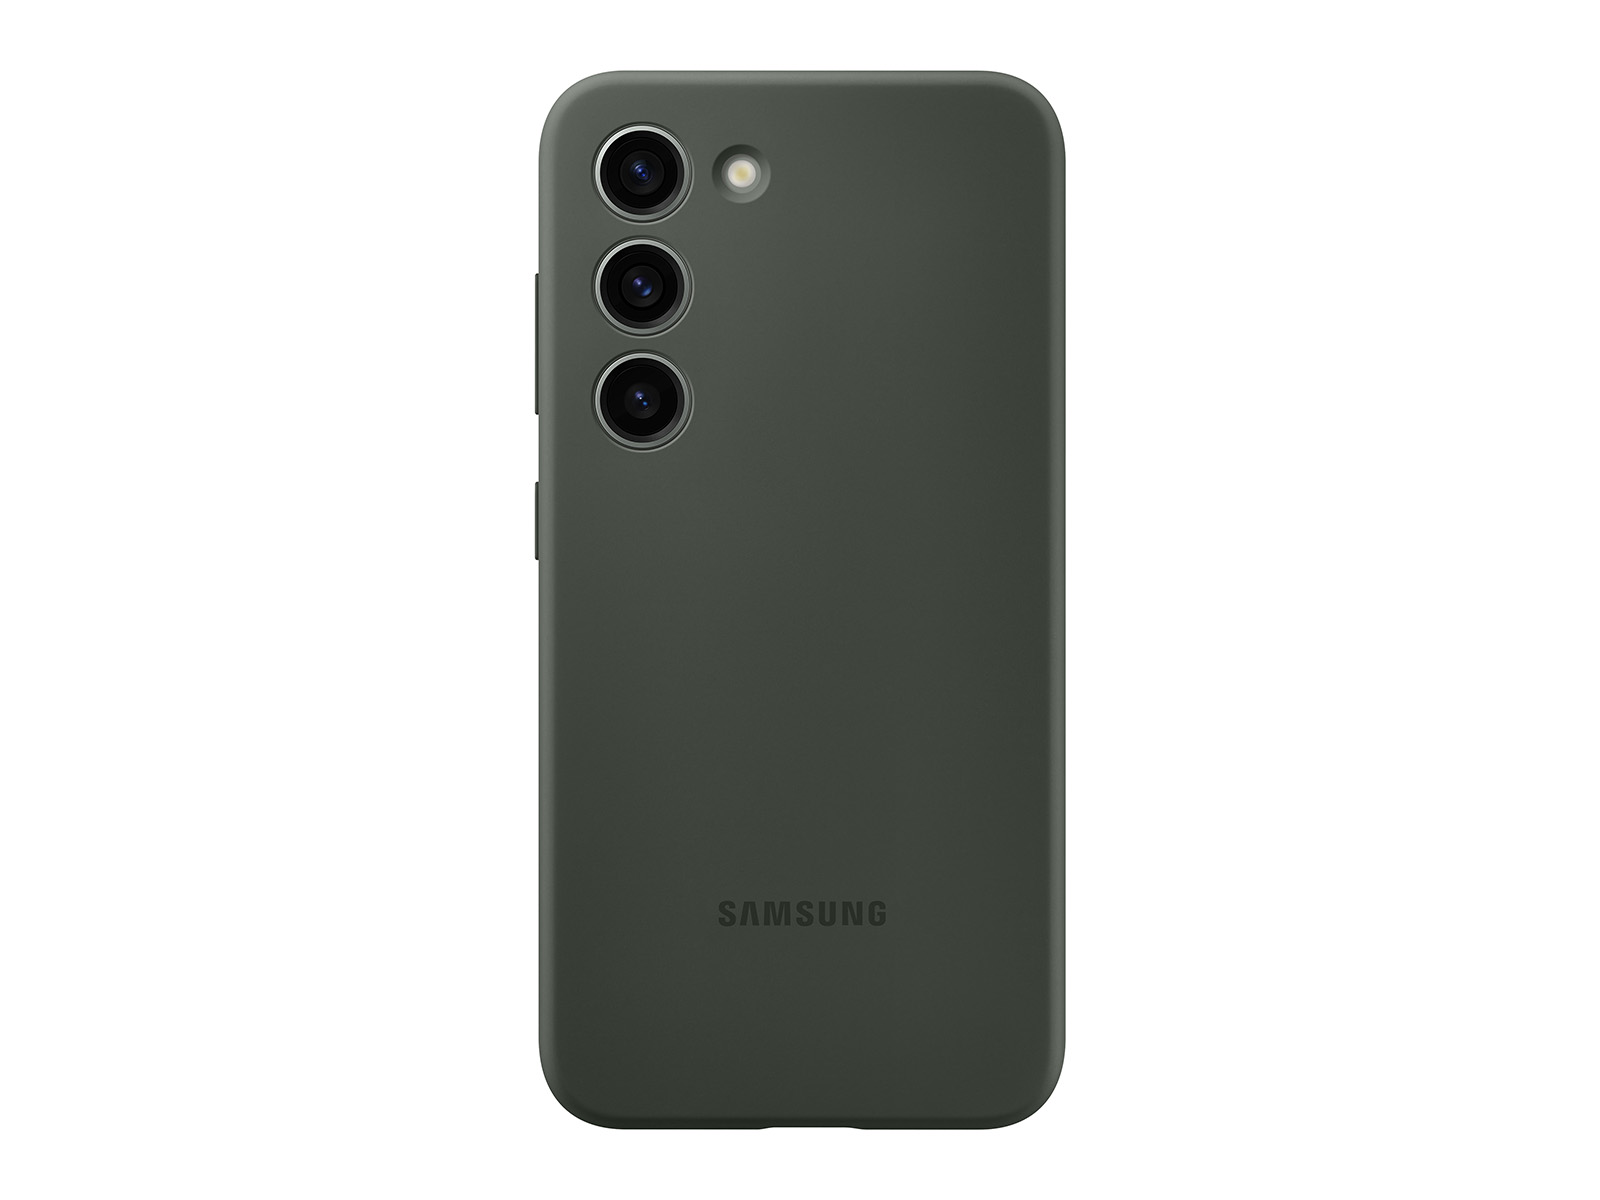 Samsung Galaxy S23 Ultra funda silicona (verde oscuro) 